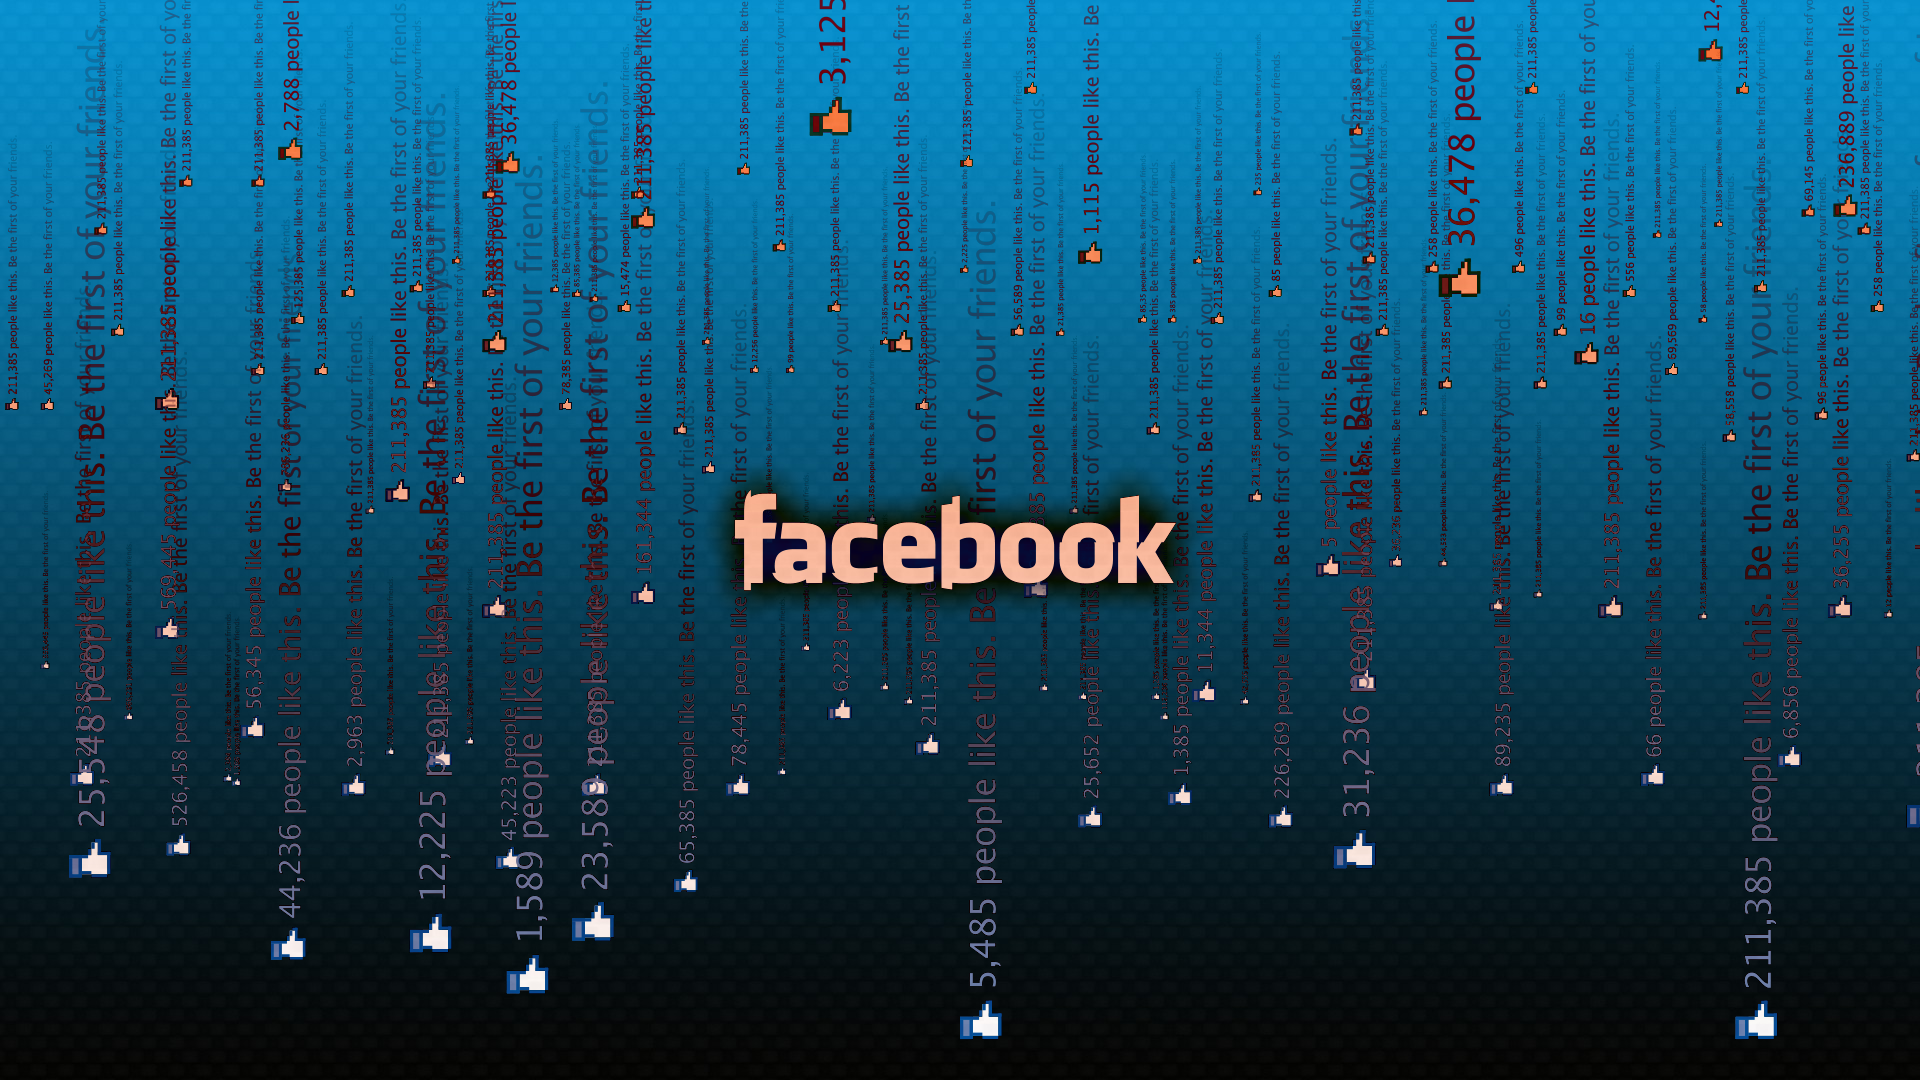 facebook wallpaper hd,blue,text,water,font,sky